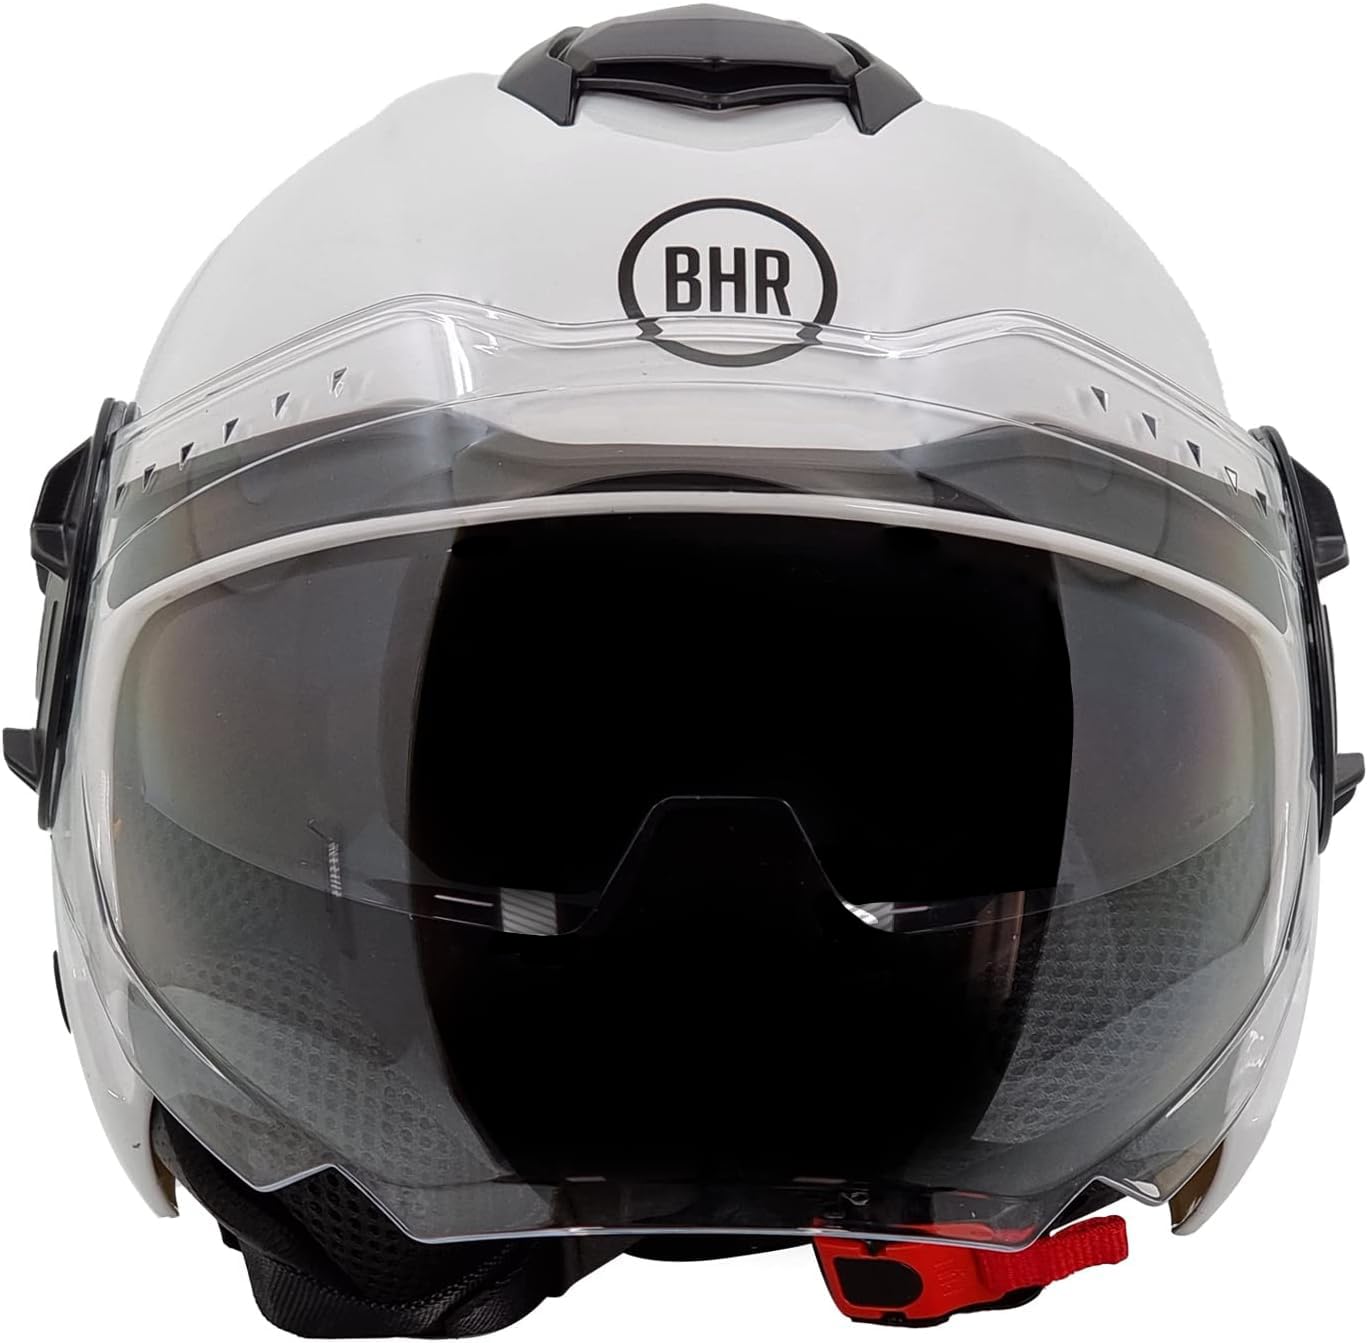 BHR Jet Helm Double Visor 830 Flash, Scooter Helm mit ECE 22.06 Zulassung, Leichter & komfortabler Jet Helm mit innenliegender Sonnenblende, Weiß, XS